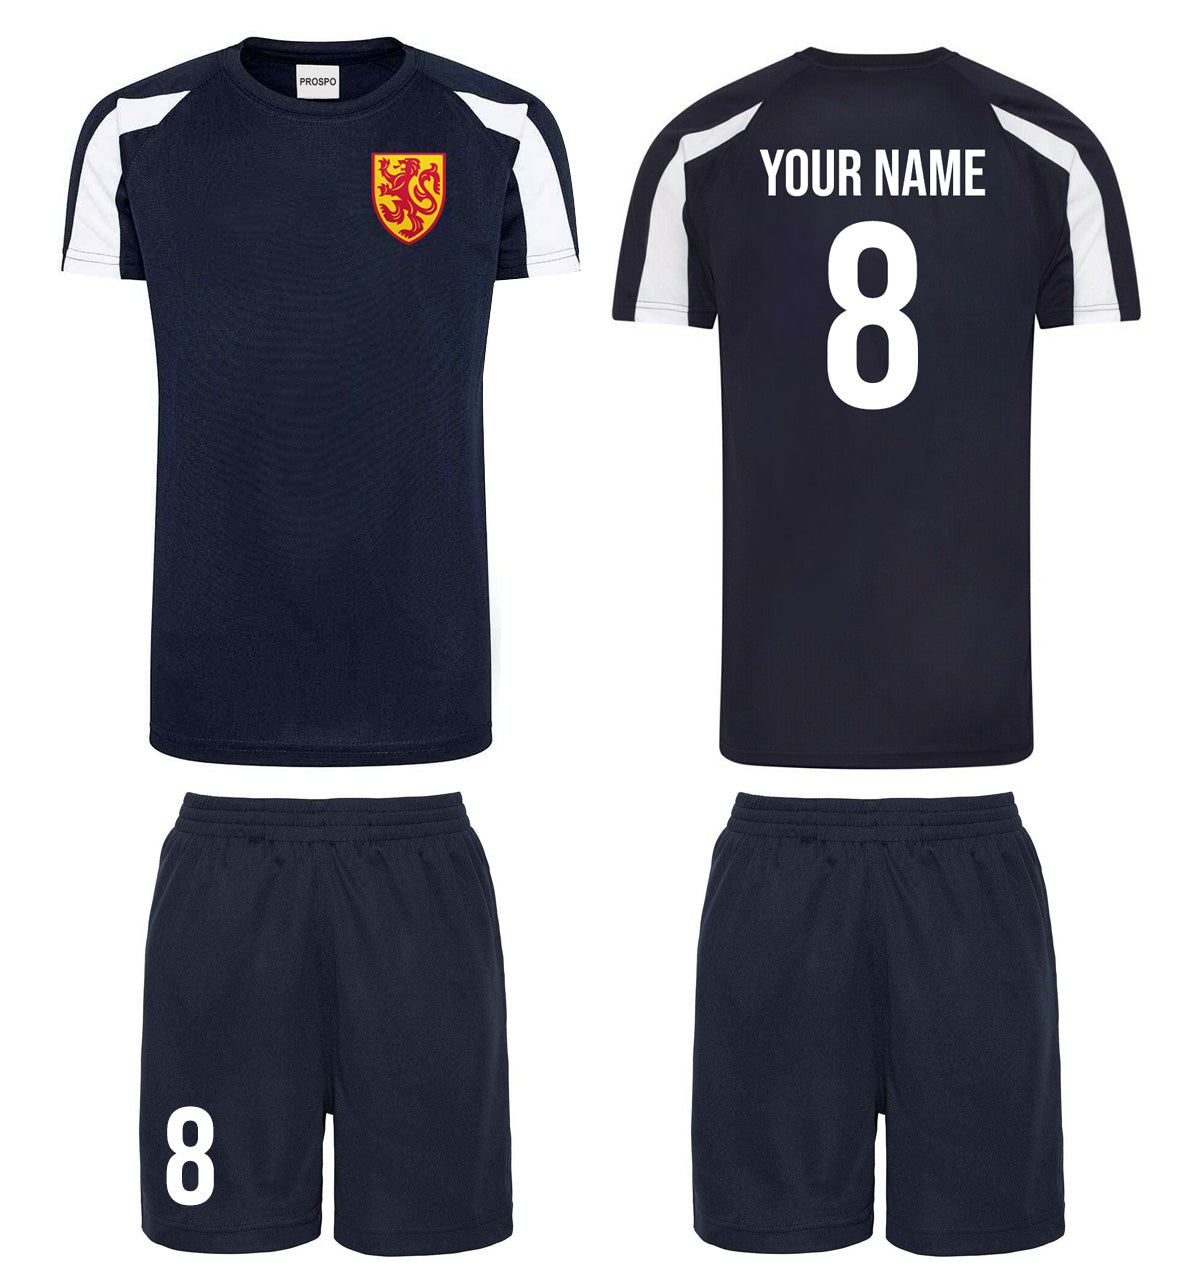 Personalised Scotland Football Kits Navy and White Football Shirts and Shorts